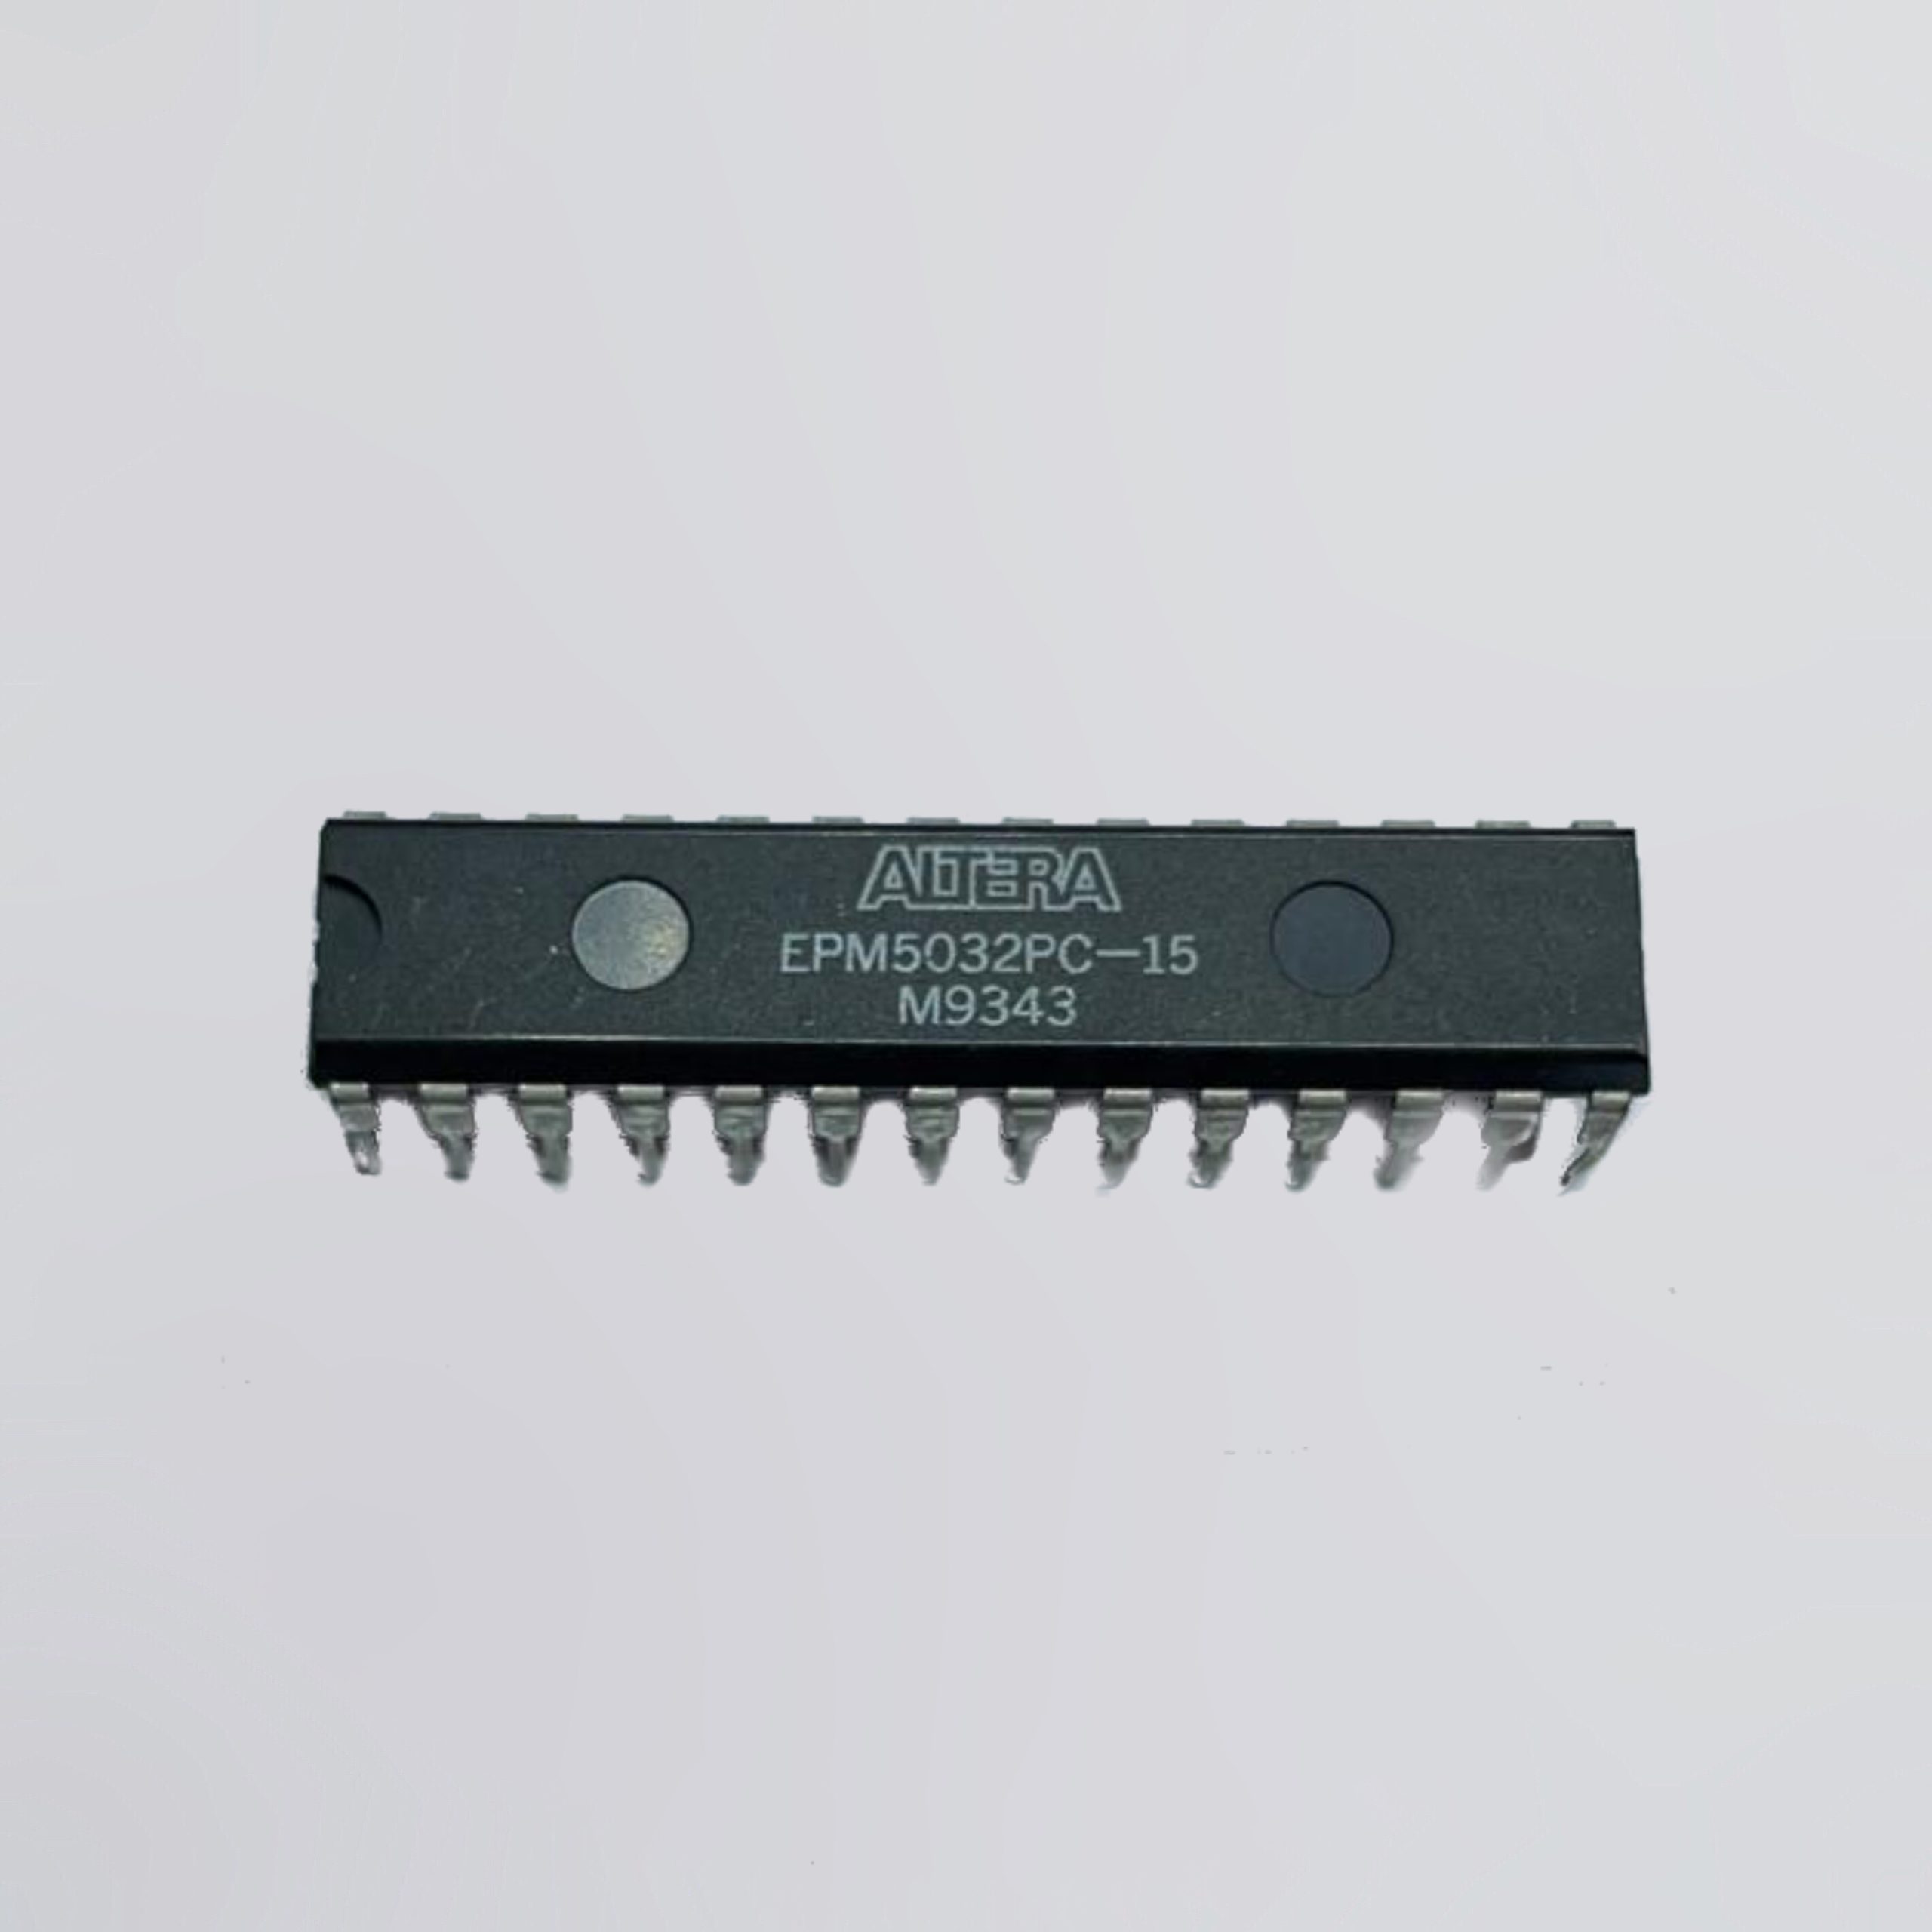 EPM5032PC-15